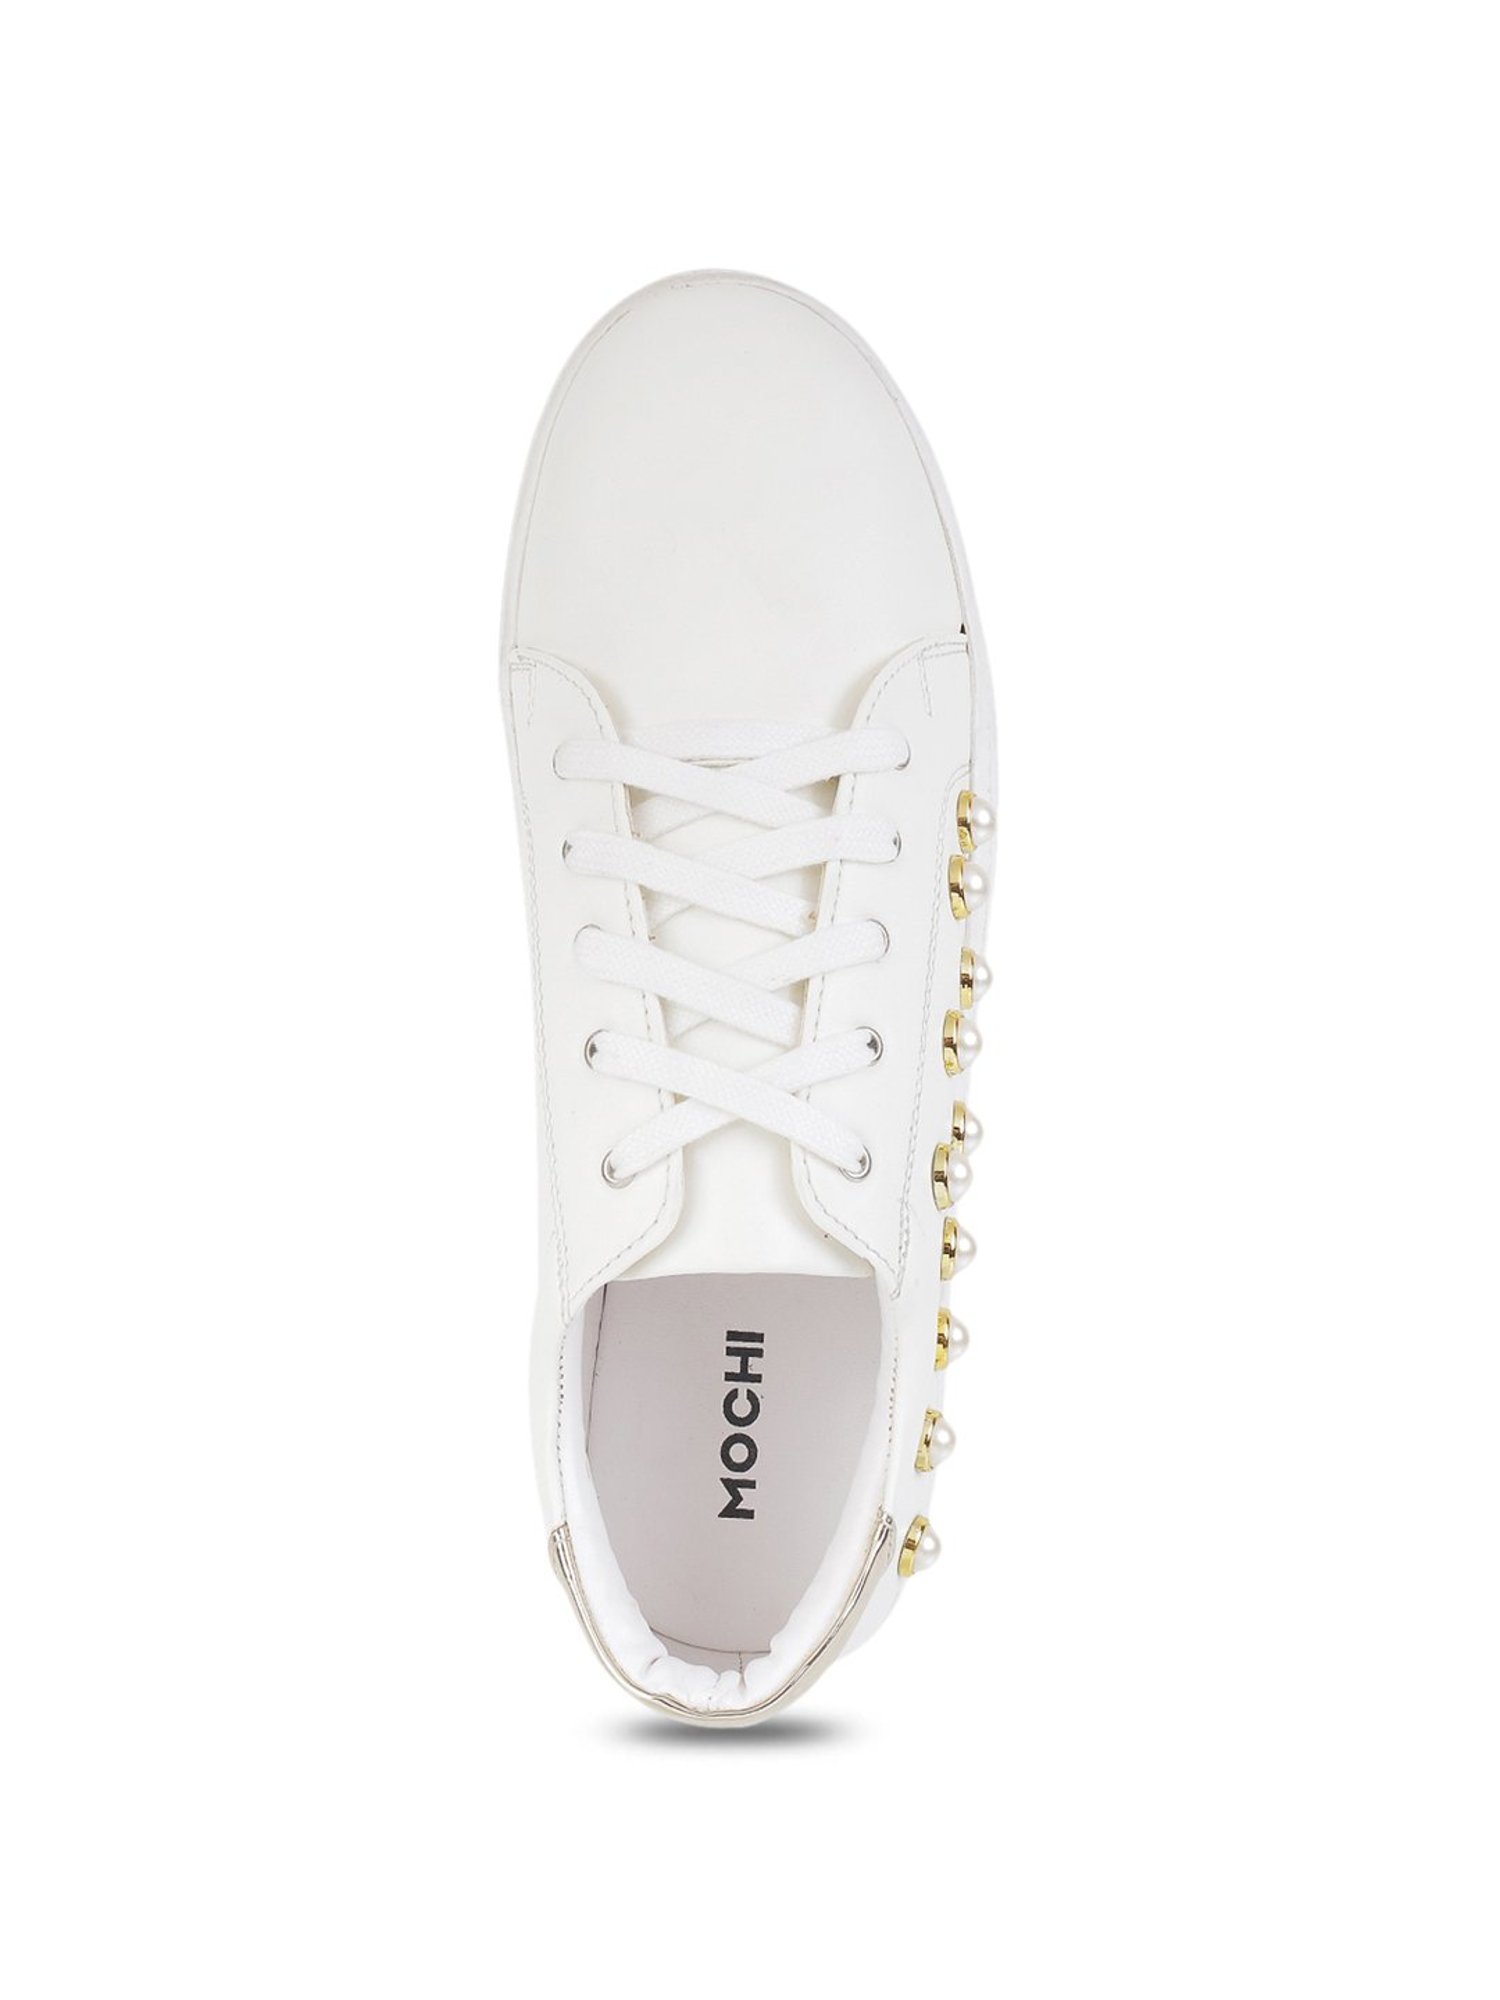 Buy Mochi Women White Sports Walking Shoes Online | SKU: 31-4844-16-36 – Mochi  Shoes